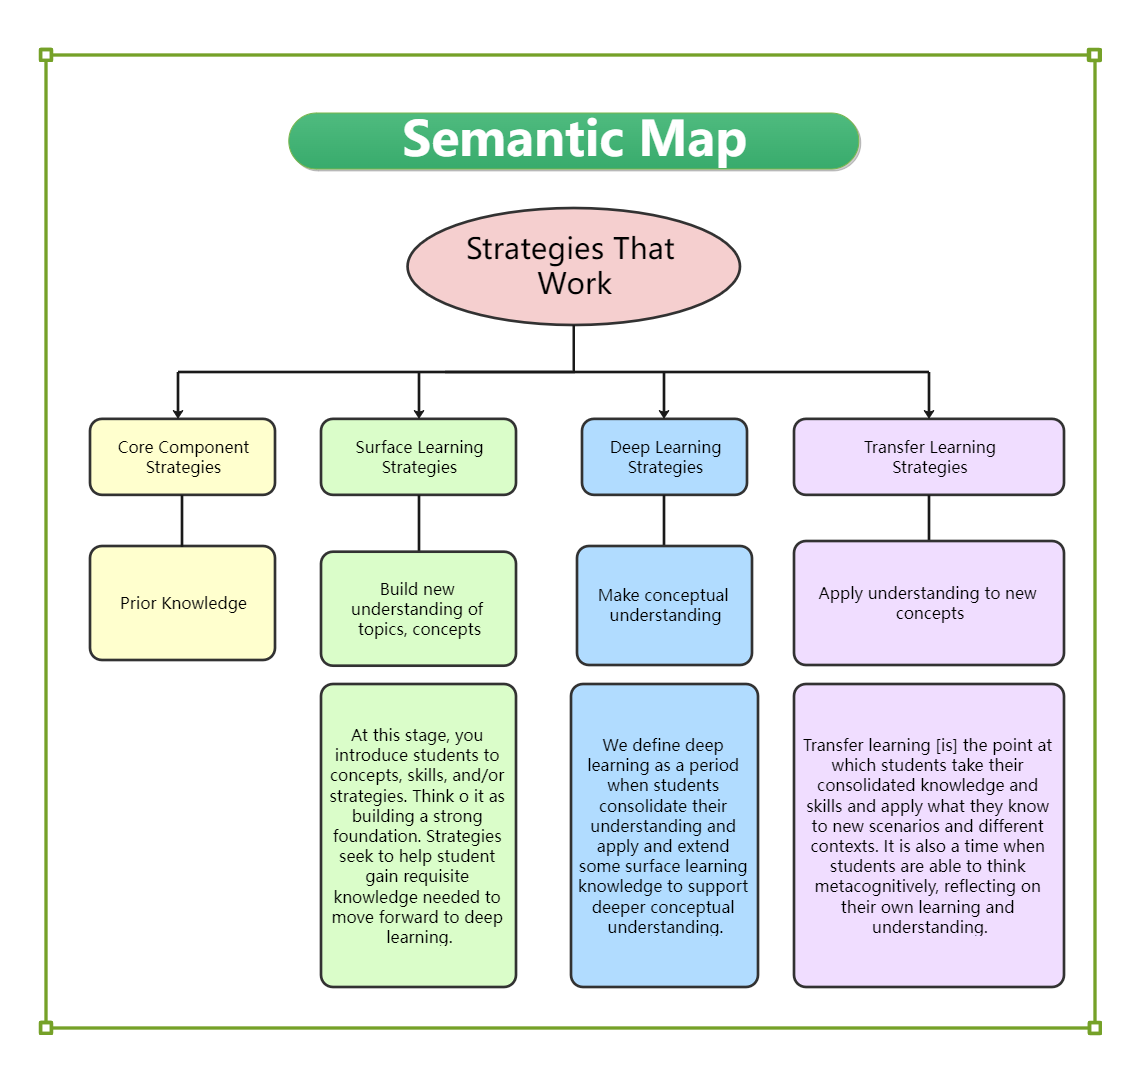 Semantic Map Strategies that Work